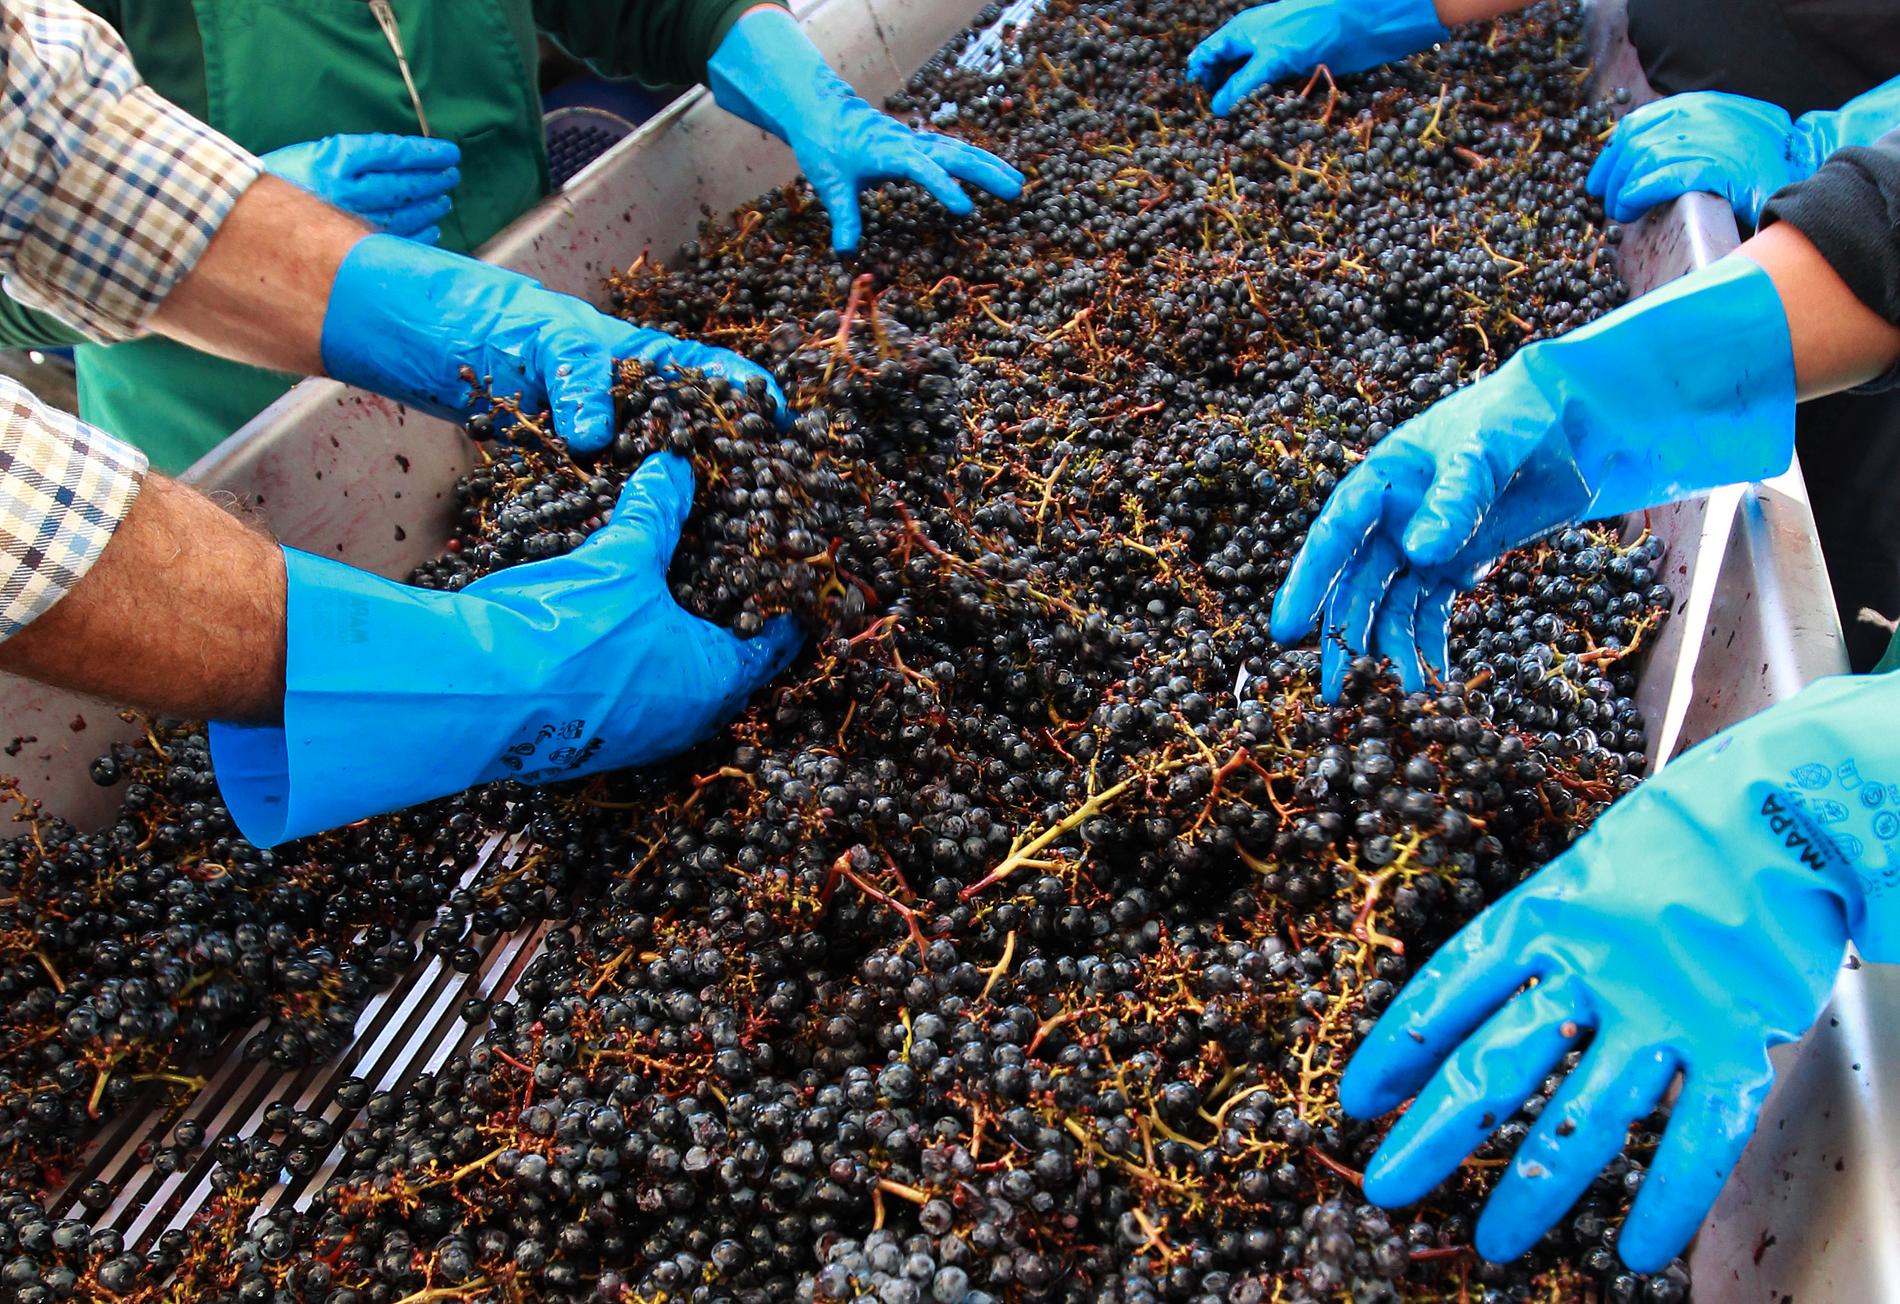 Arbetare sorterar druvor under skörden i Pessac-Leognan i närheten av Bordeaux. Bilden hänger inte ihop med artikeln.